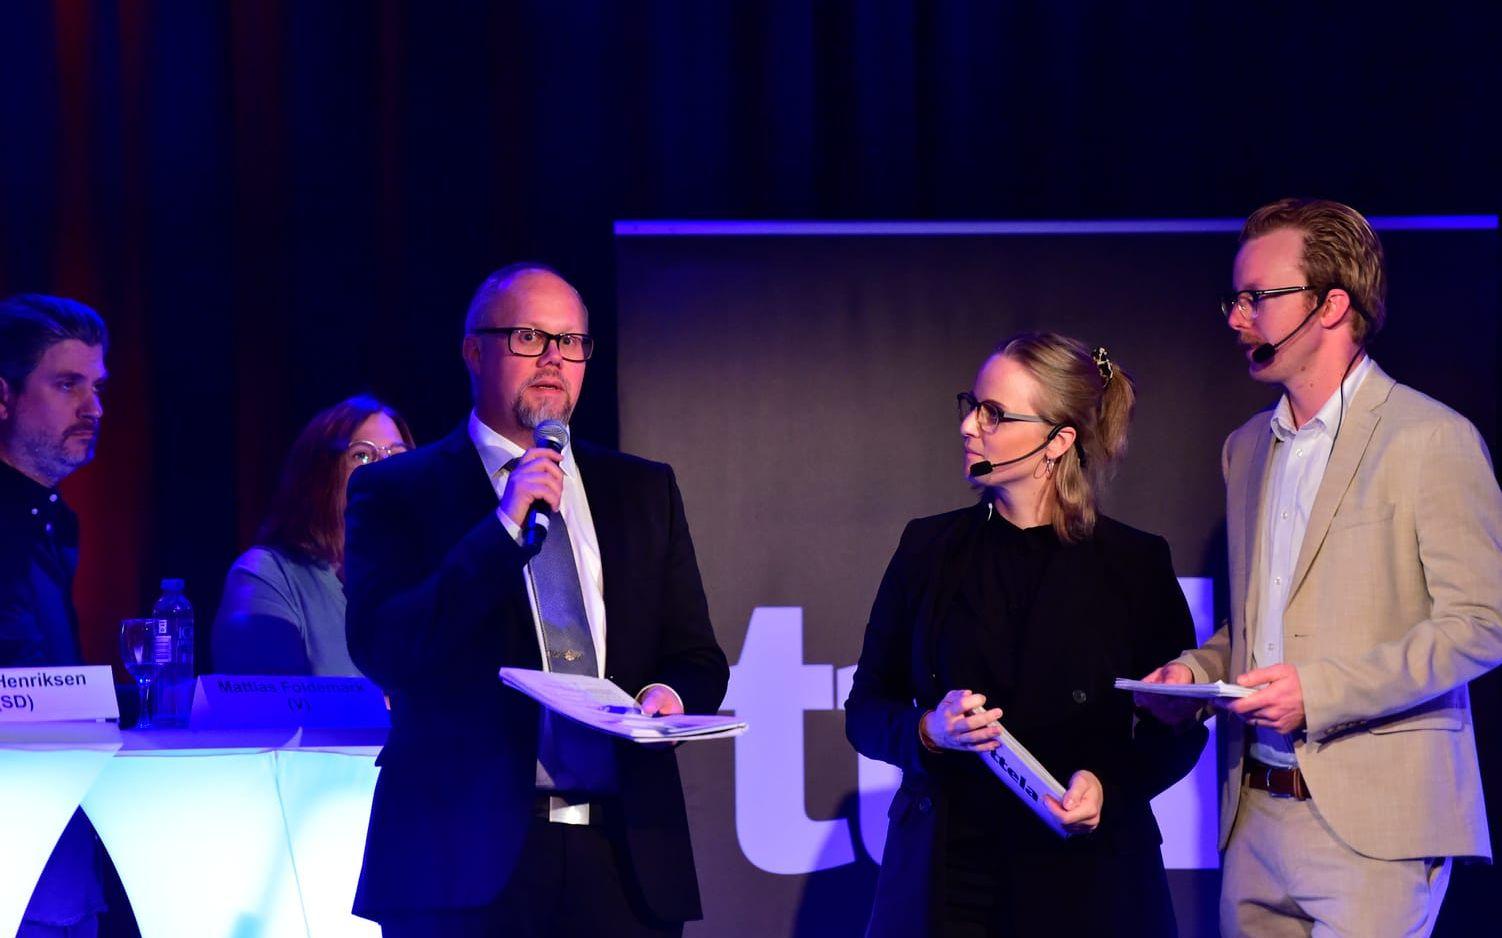 TTELA:s ledarskribent Karl af Geijerstam på scen tillsammans med TTELA:s reportrar Annie Granzell och Daniel Gustafsson.